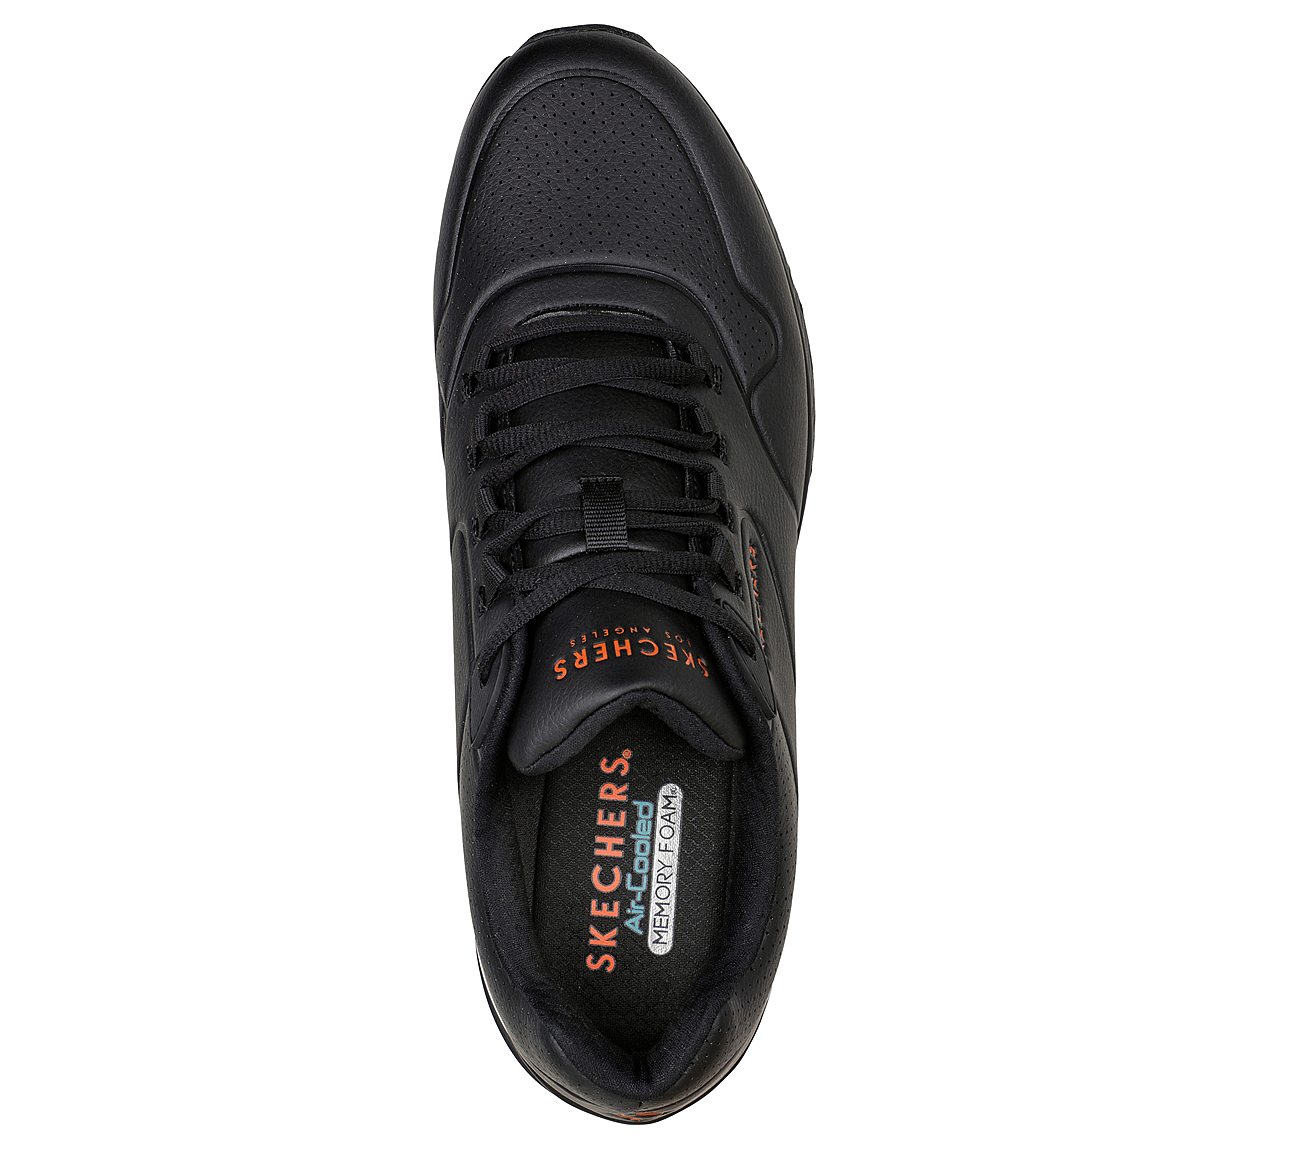 UNO 2, BLACK/ORANGE Footwear Top View